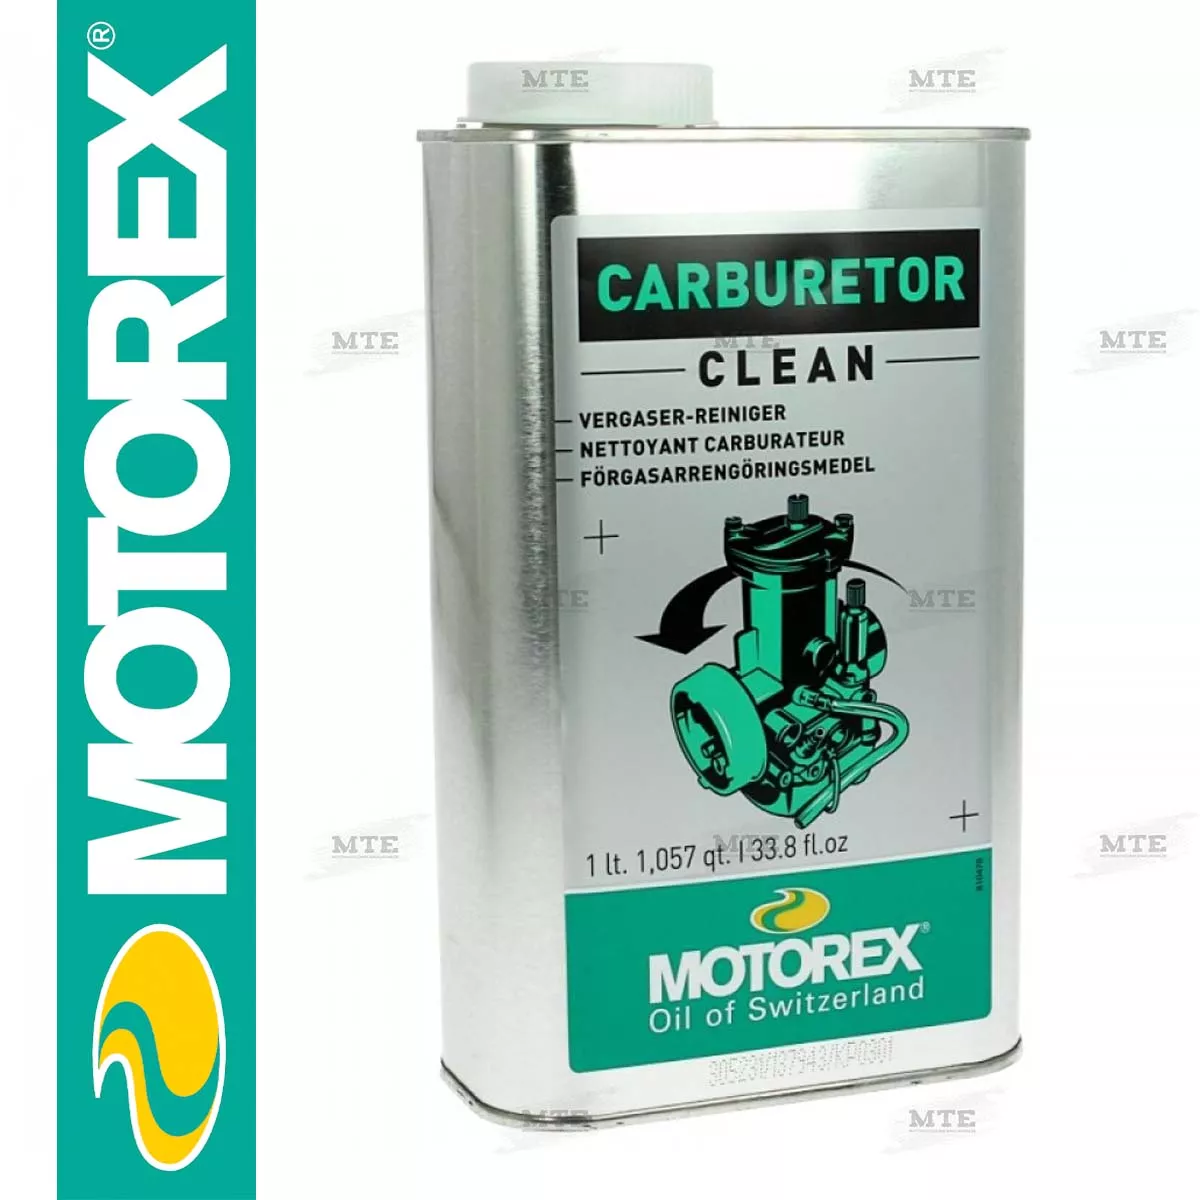 Motorex Vergaserreiniger, 500ml - 980-456 - Pro Detailing